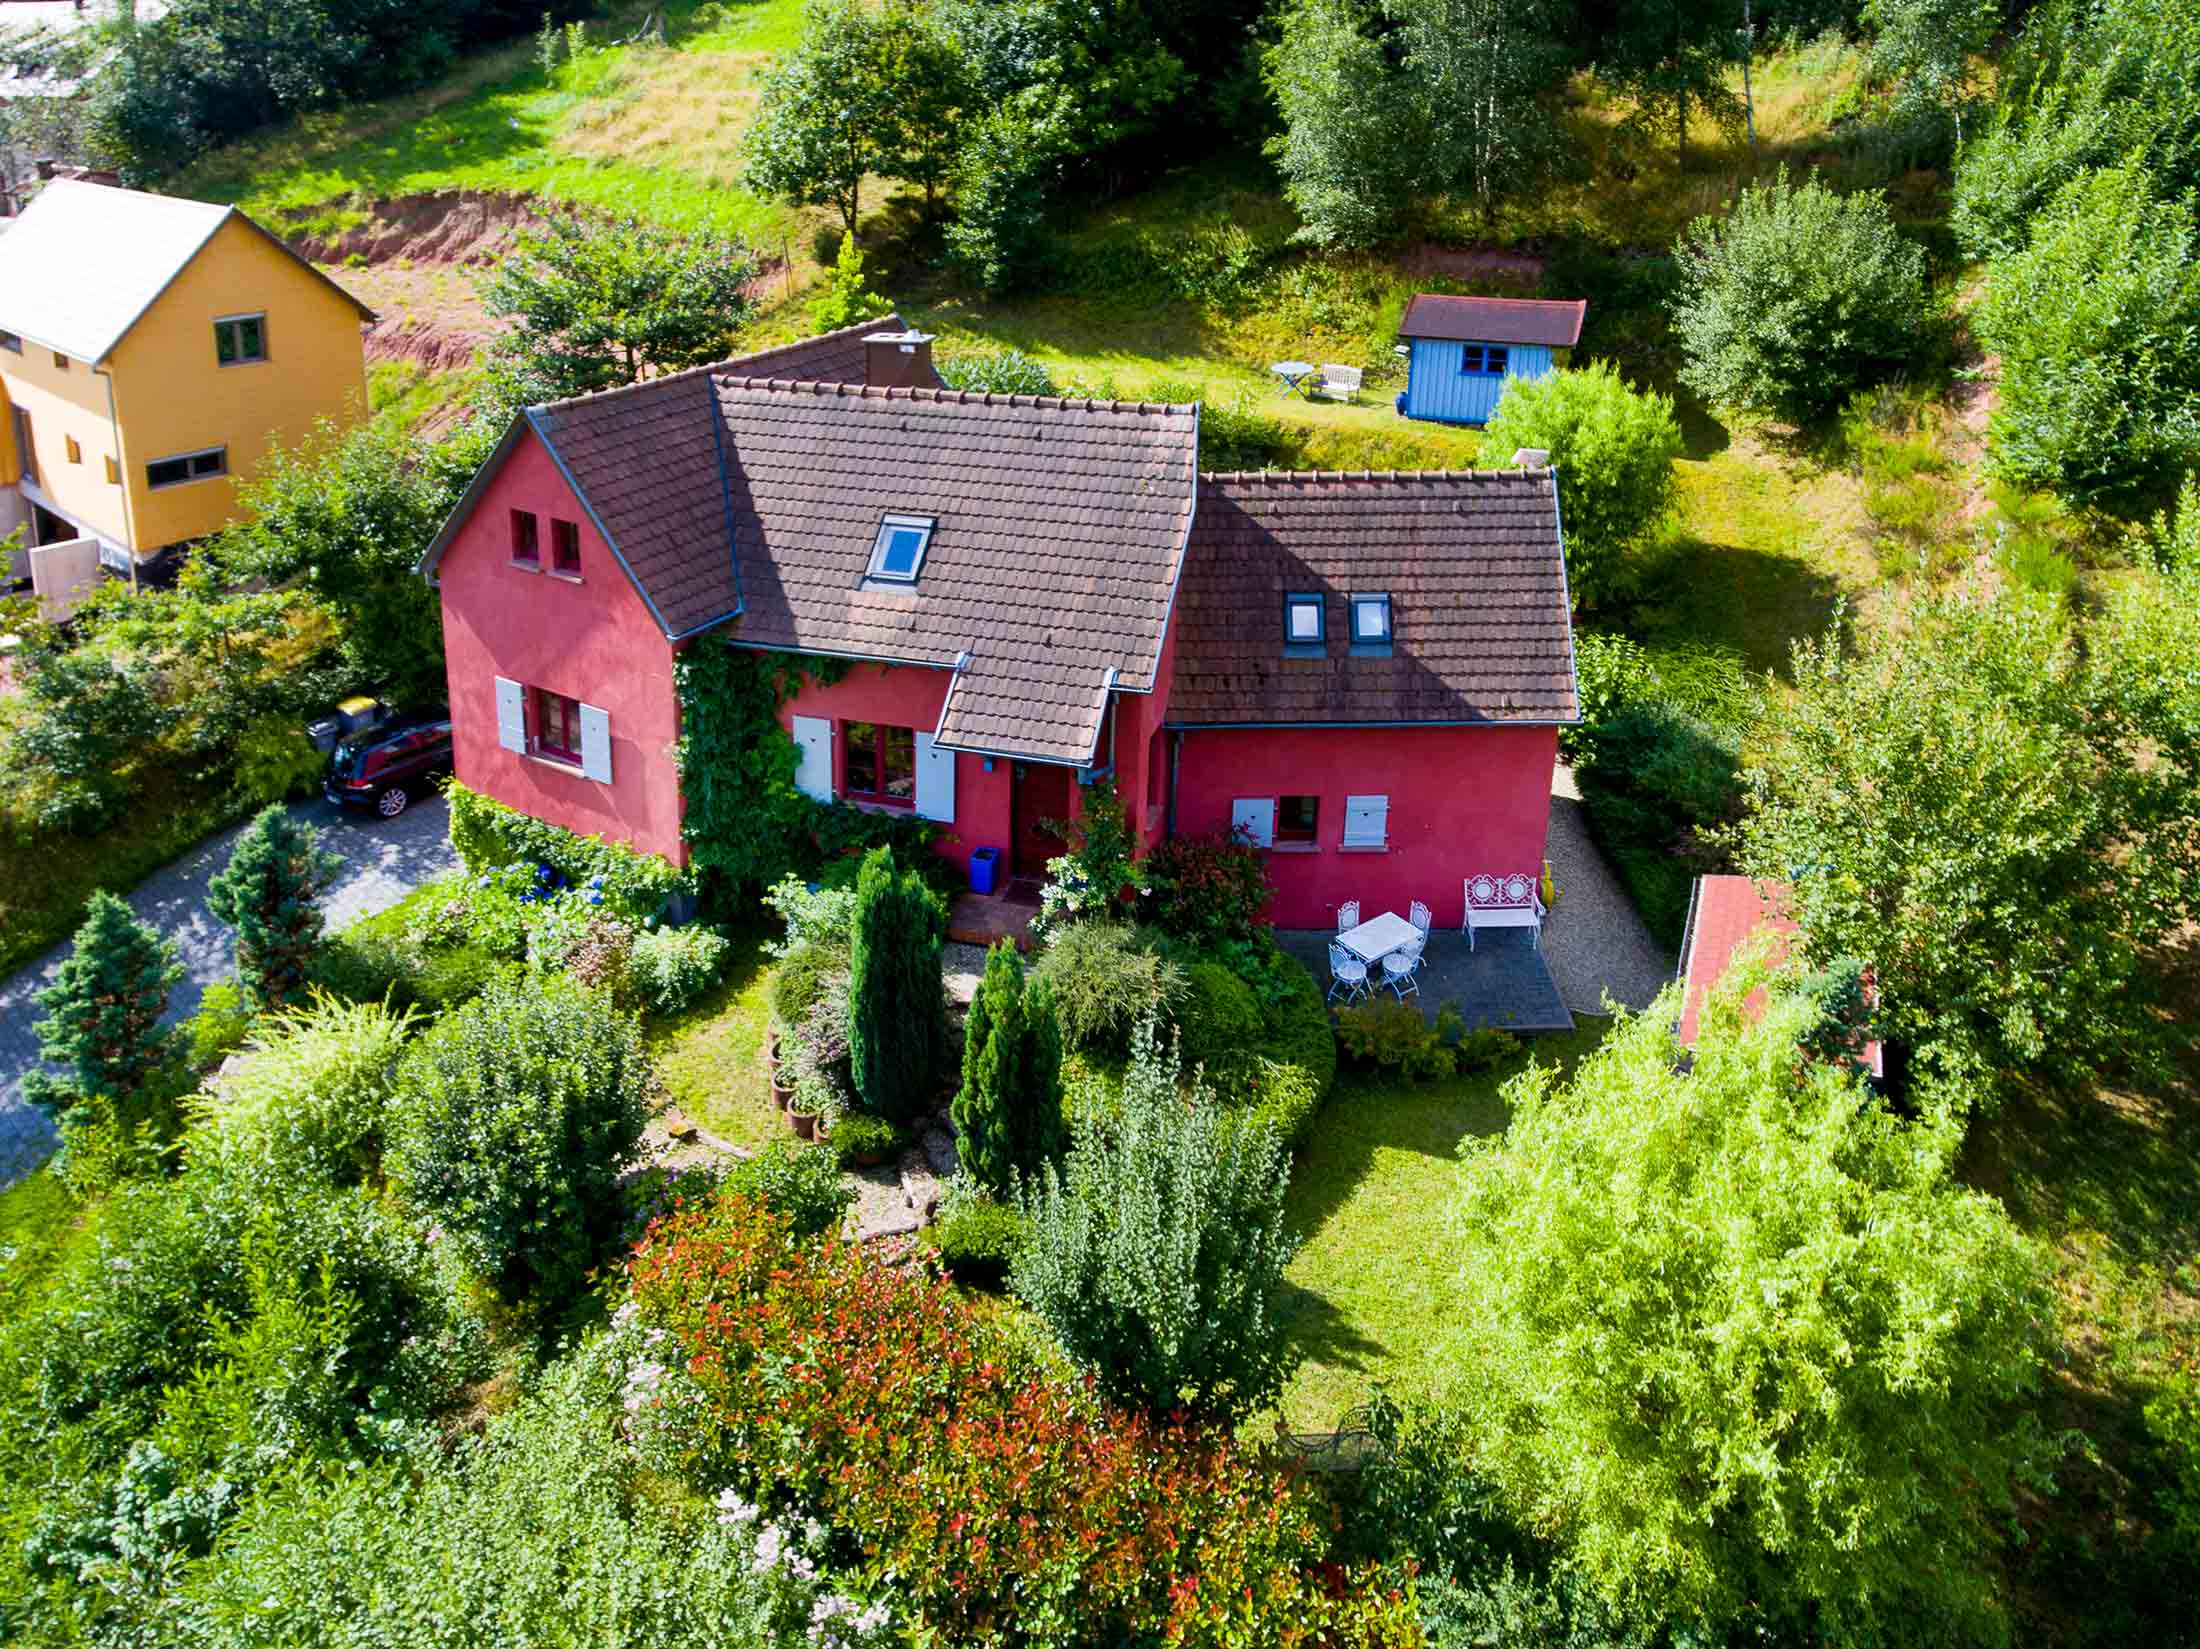 Prise de vue d'architecture réalisée par drone d'une maison en Alsace